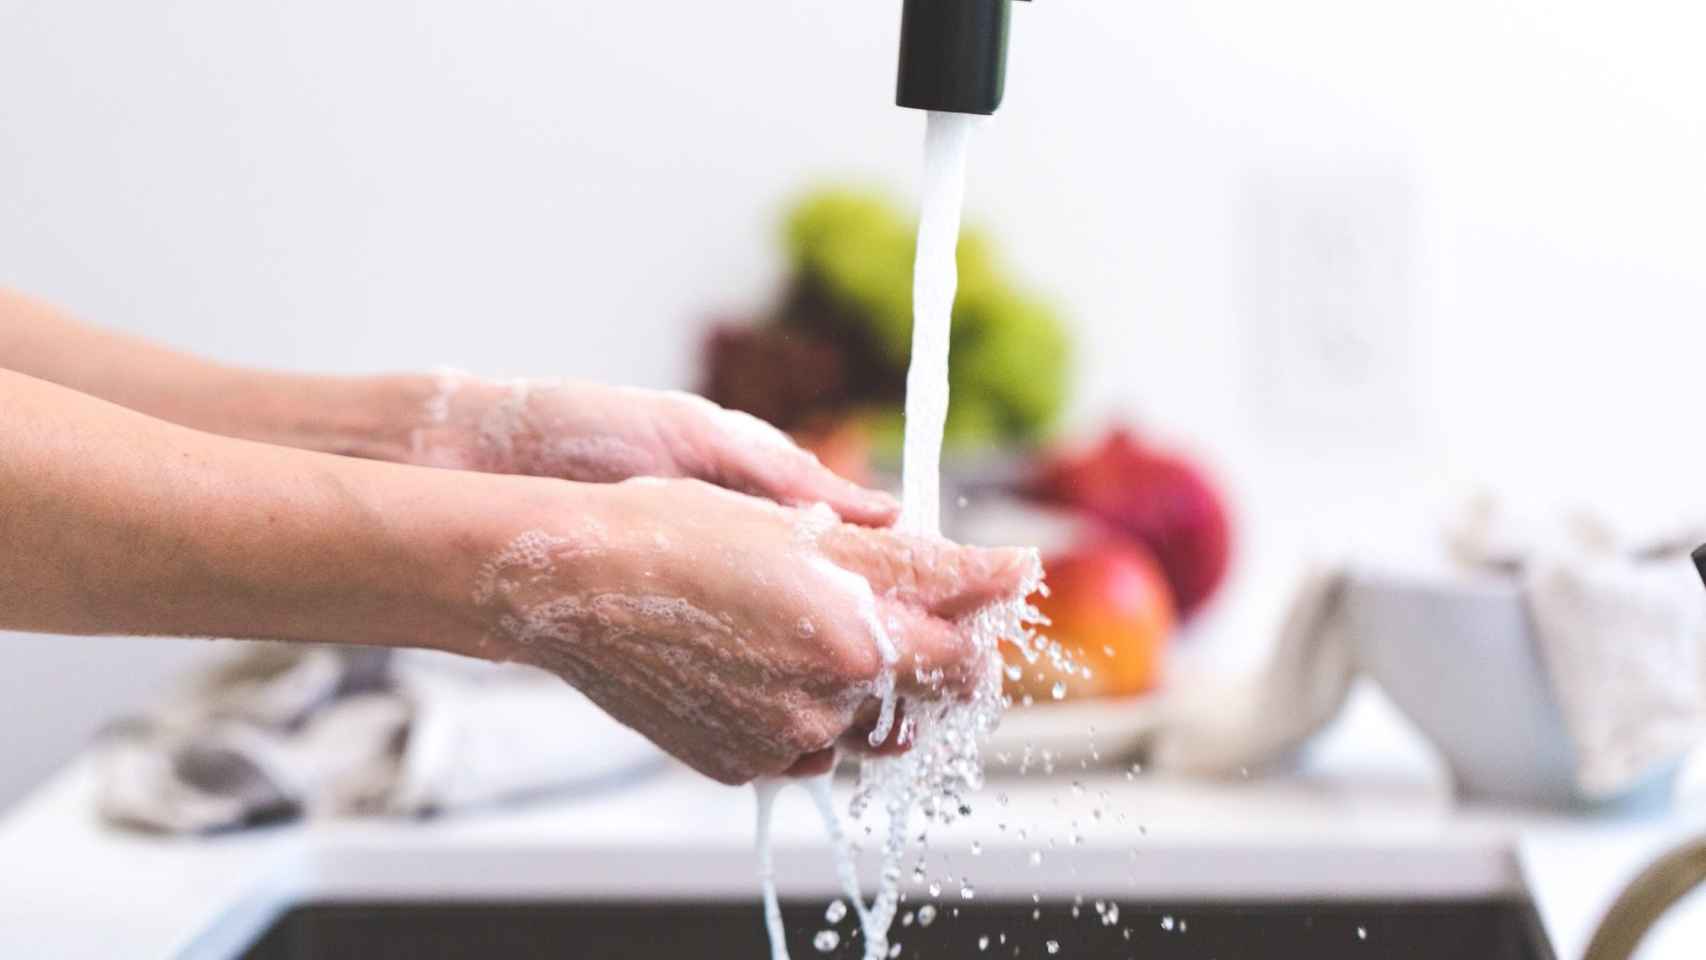 Persona lavándose las manos en un fregadero. Pexels photo